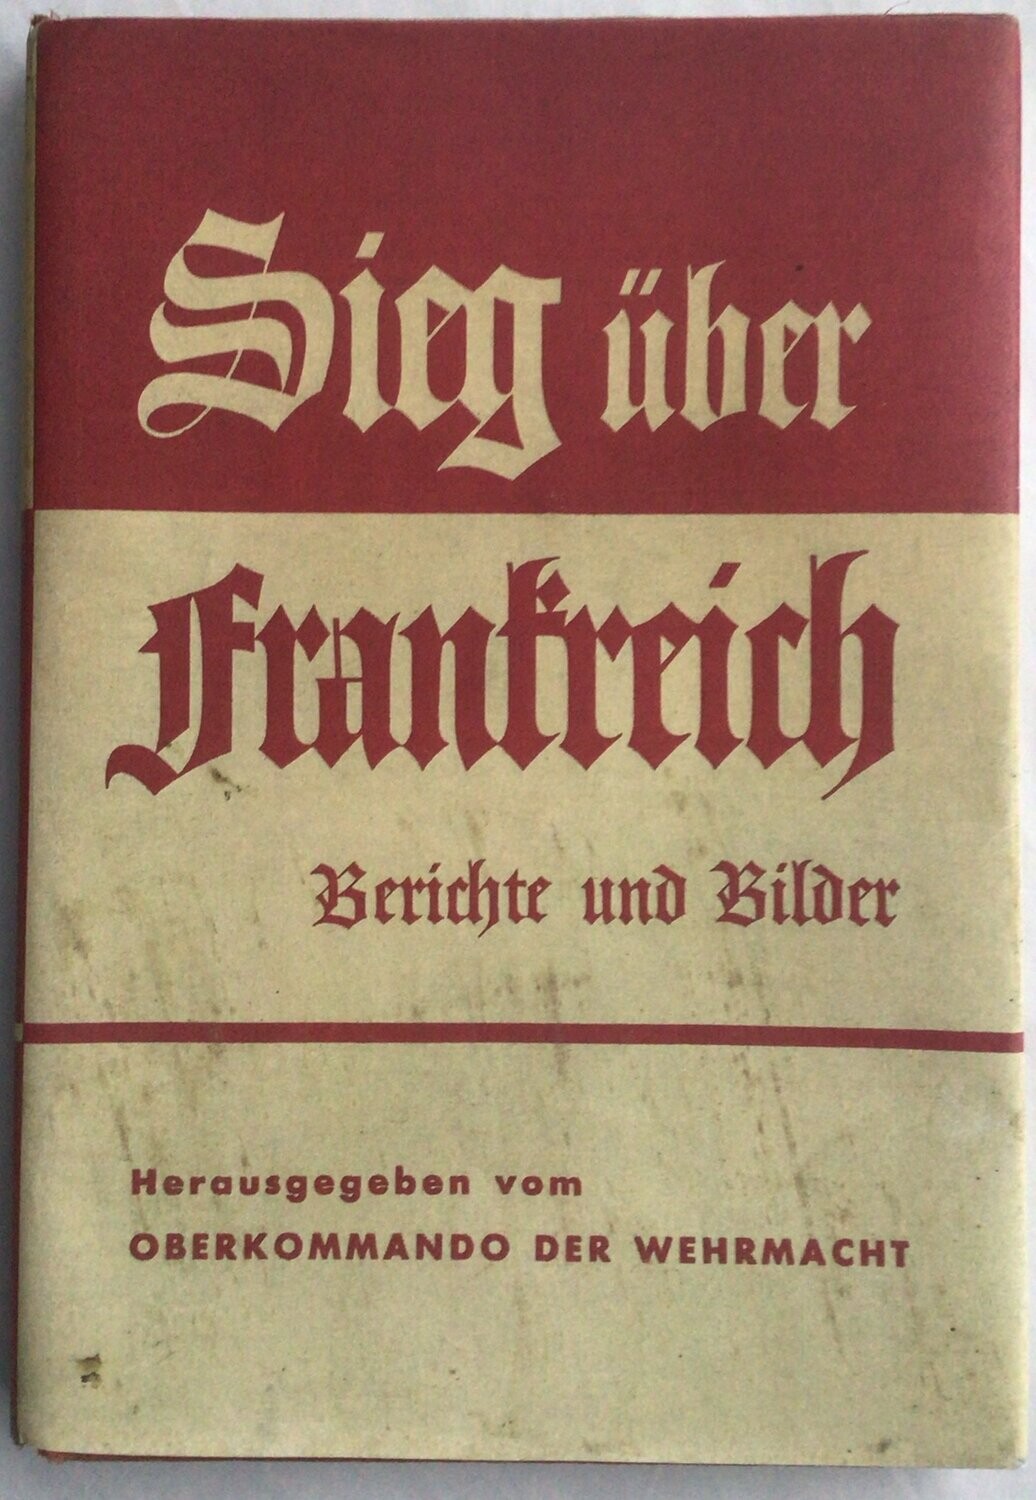 Oberkommando der Wehrmacht: Sieg über Frankreich - Kartonierte Ausgabe um 1942 mit Schutzumschlag (Farbkopie)